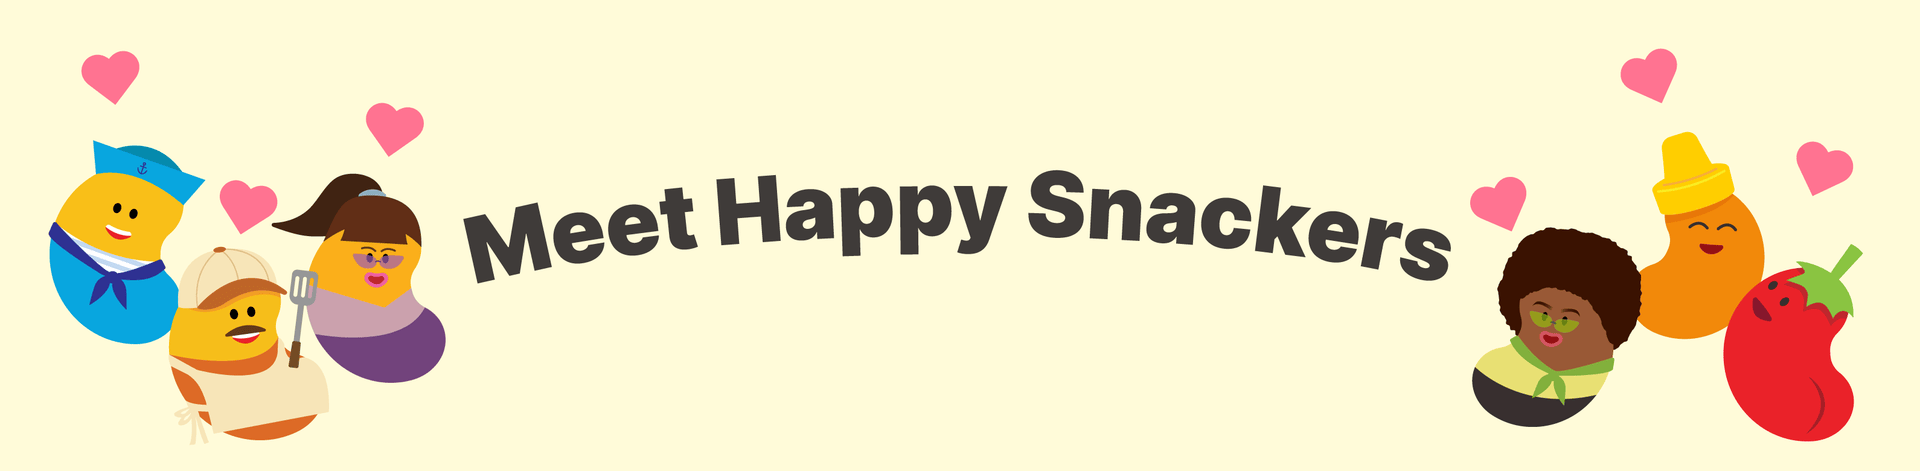 Meet Happy Snackers